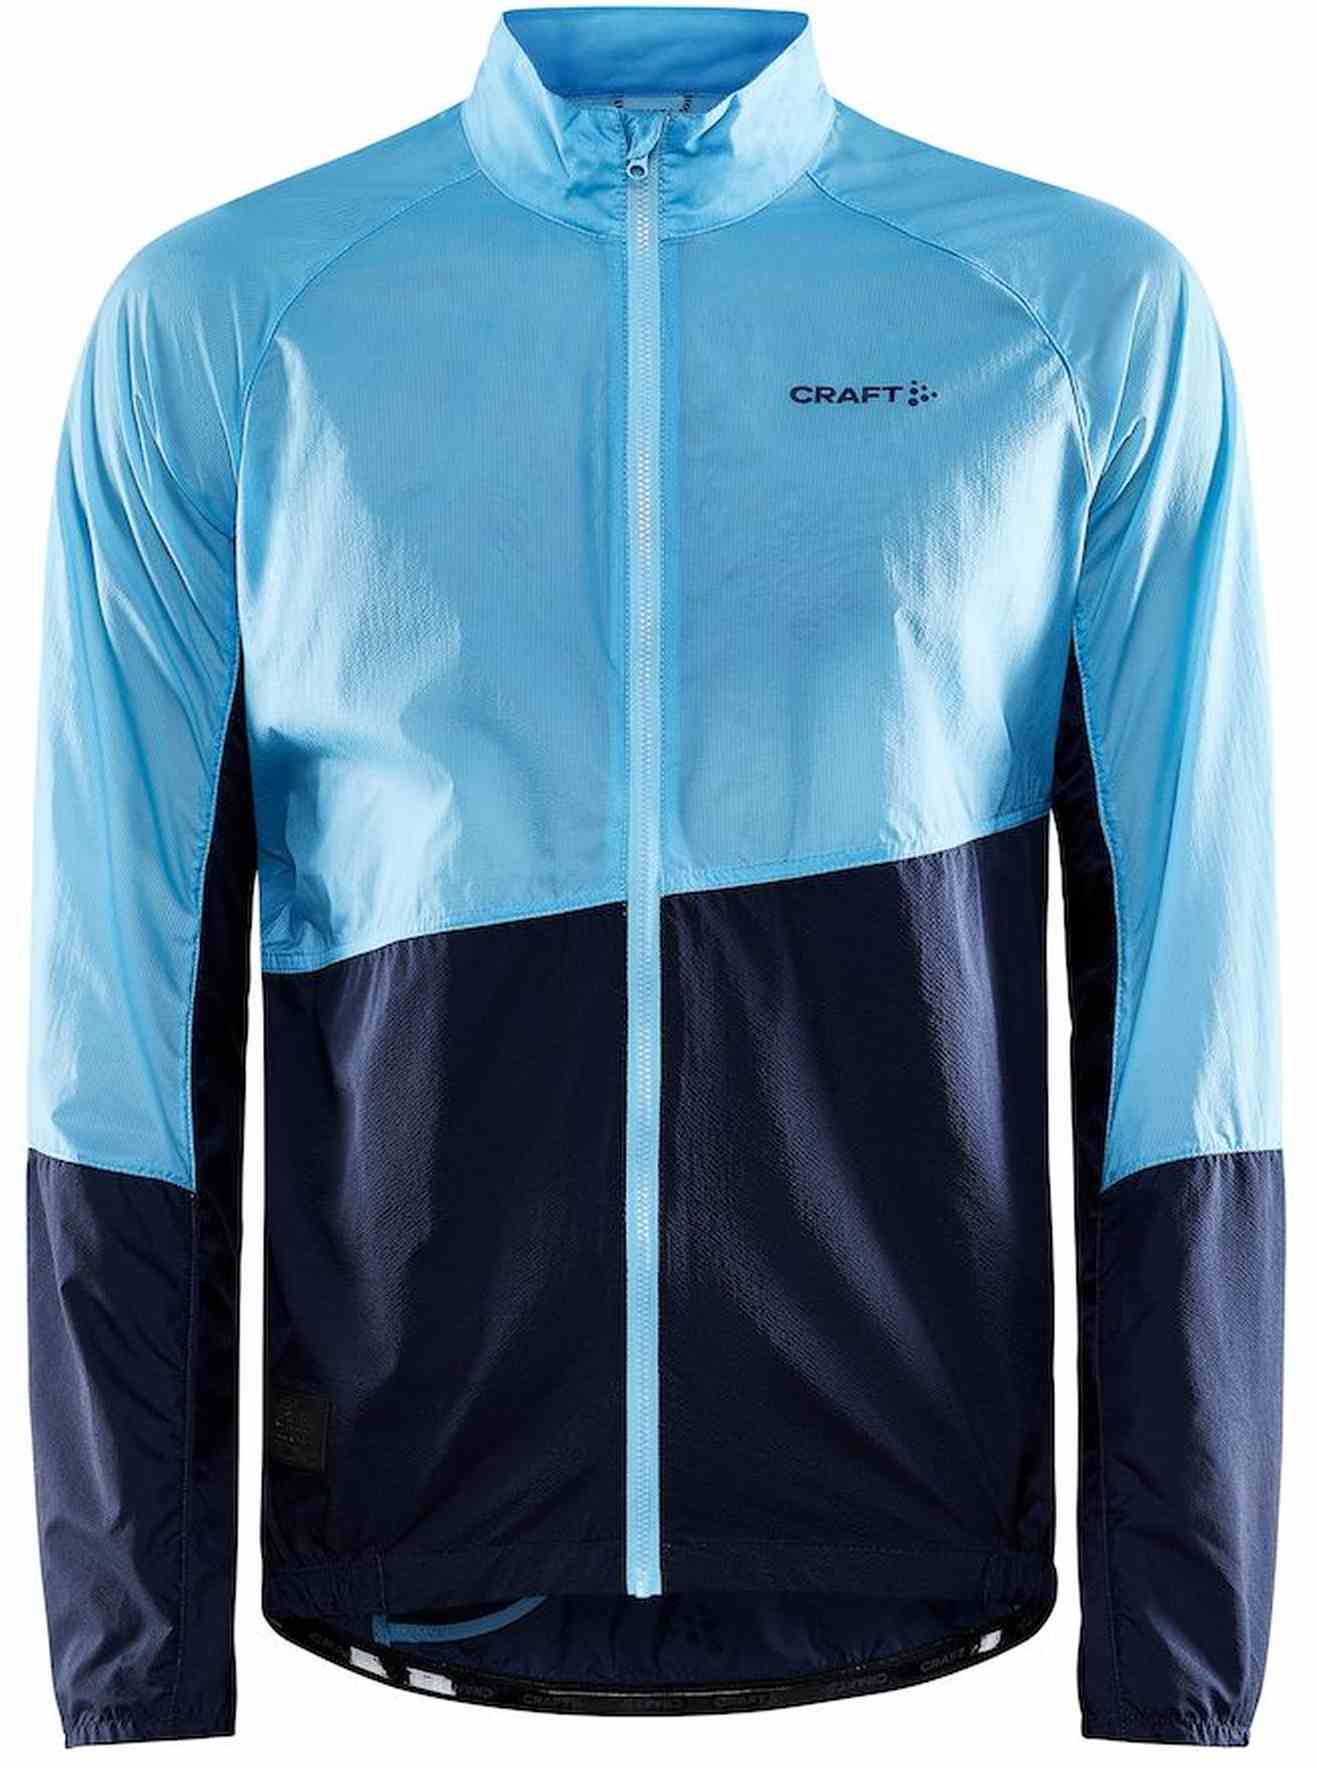 Men’s lightweight cycling jacket